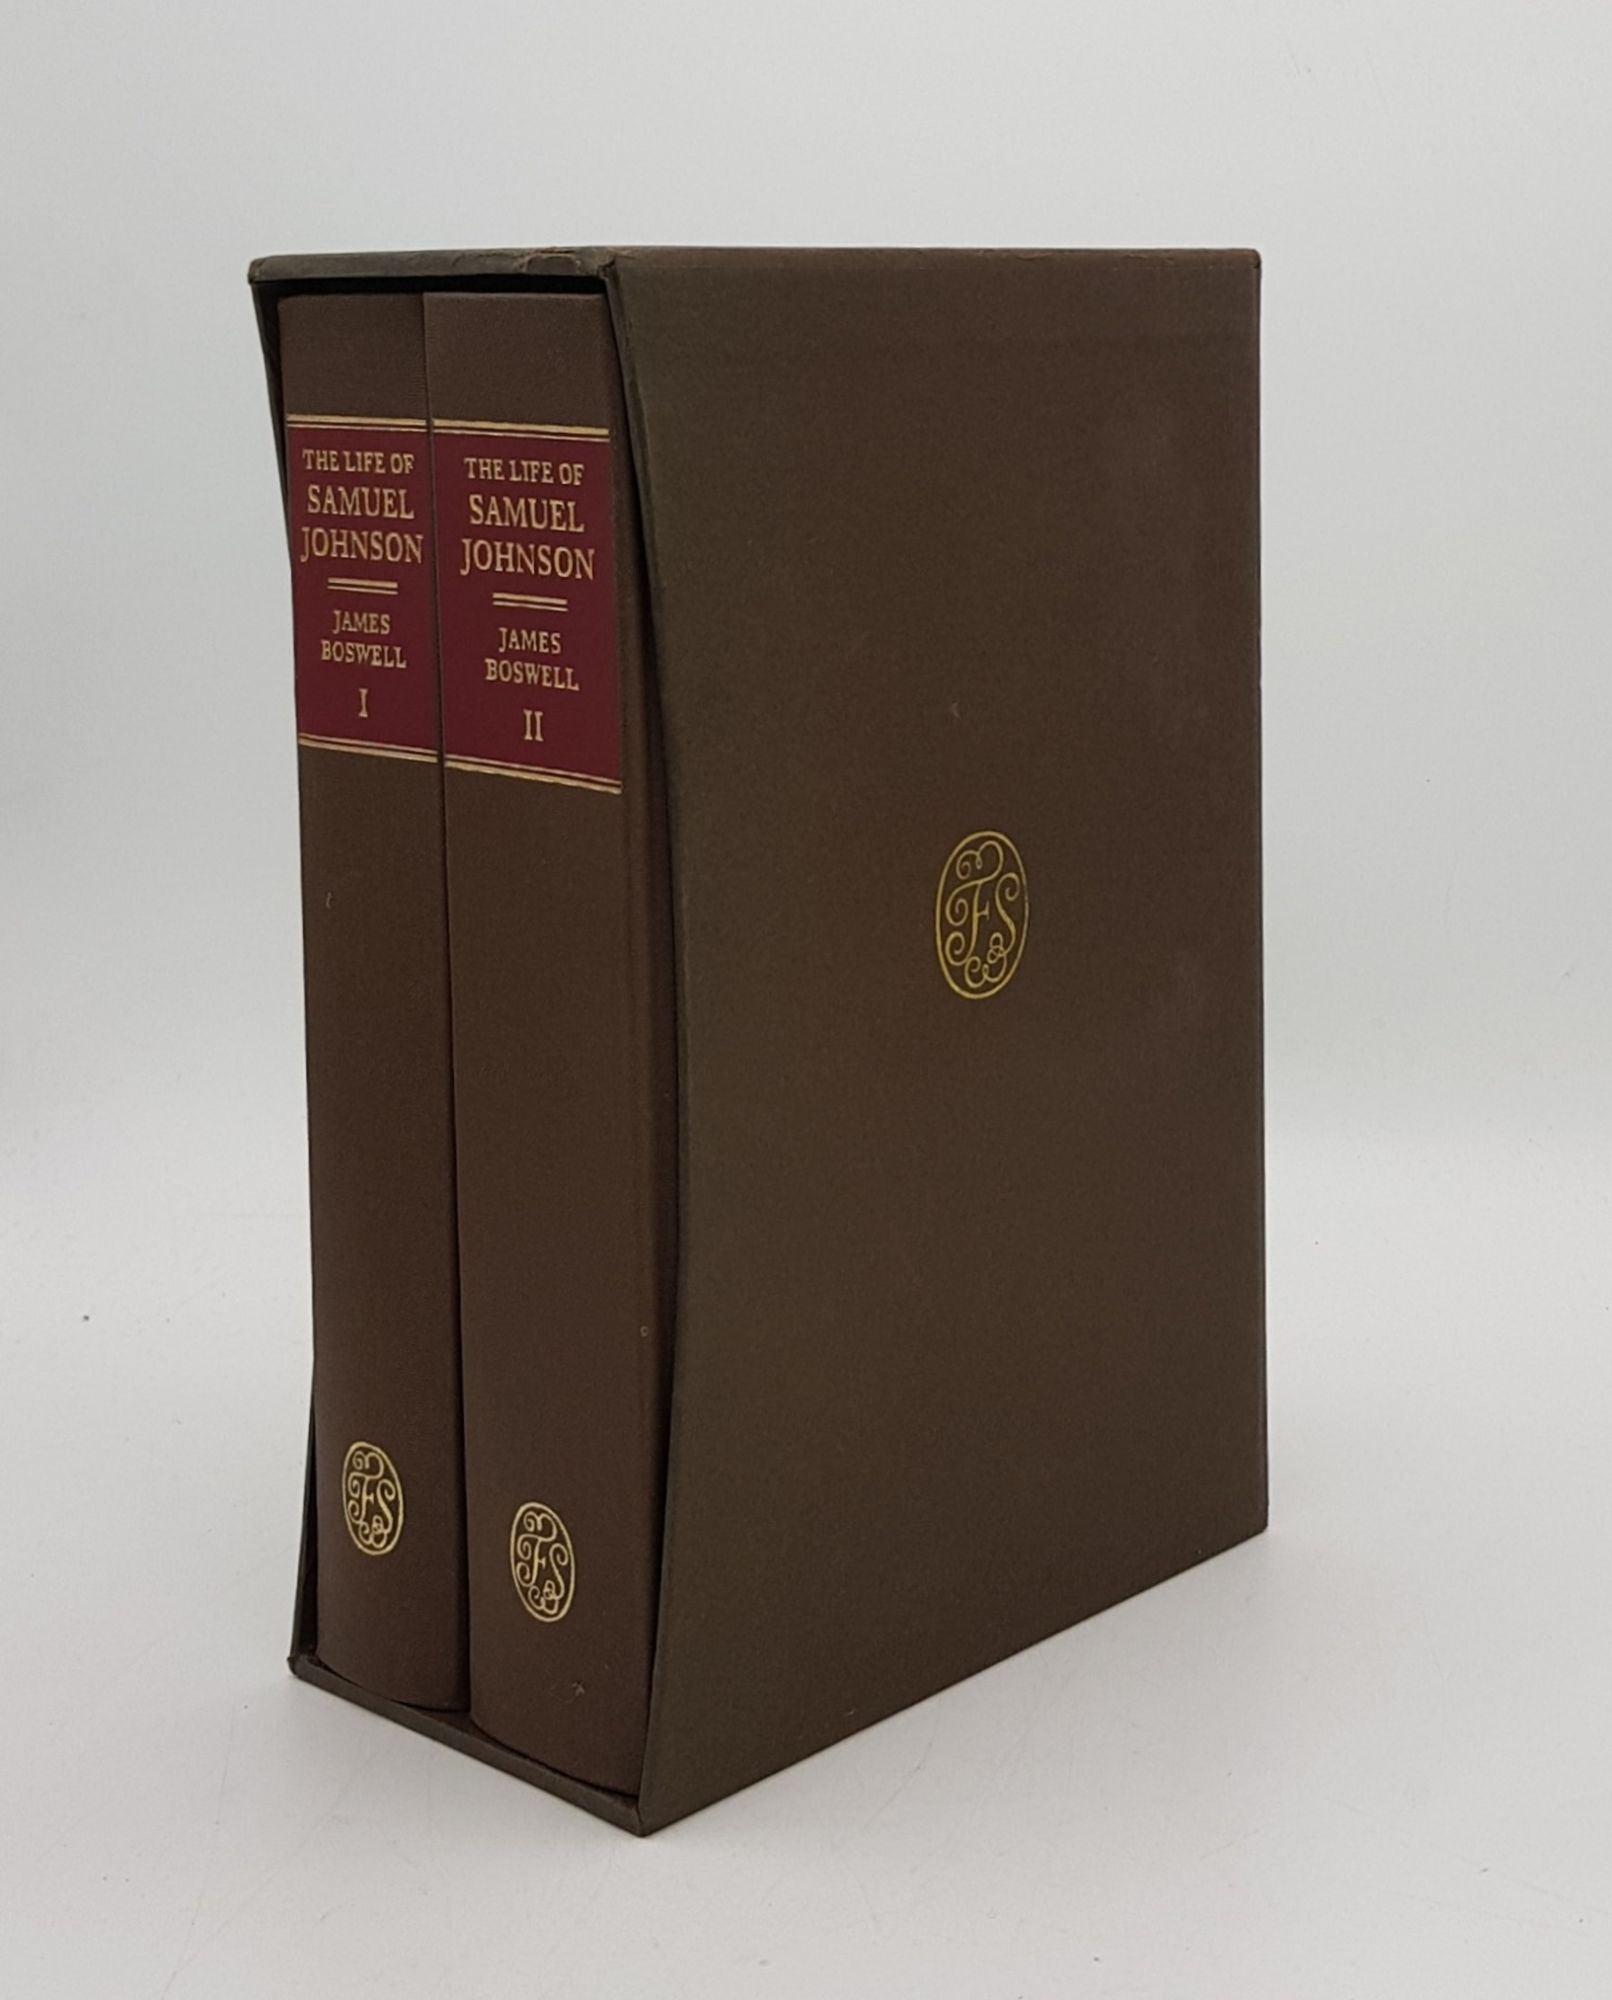 BOSWELL James, SHEWAN Rodney - The Life of Samuel Johnson Volume I [&] Volume II